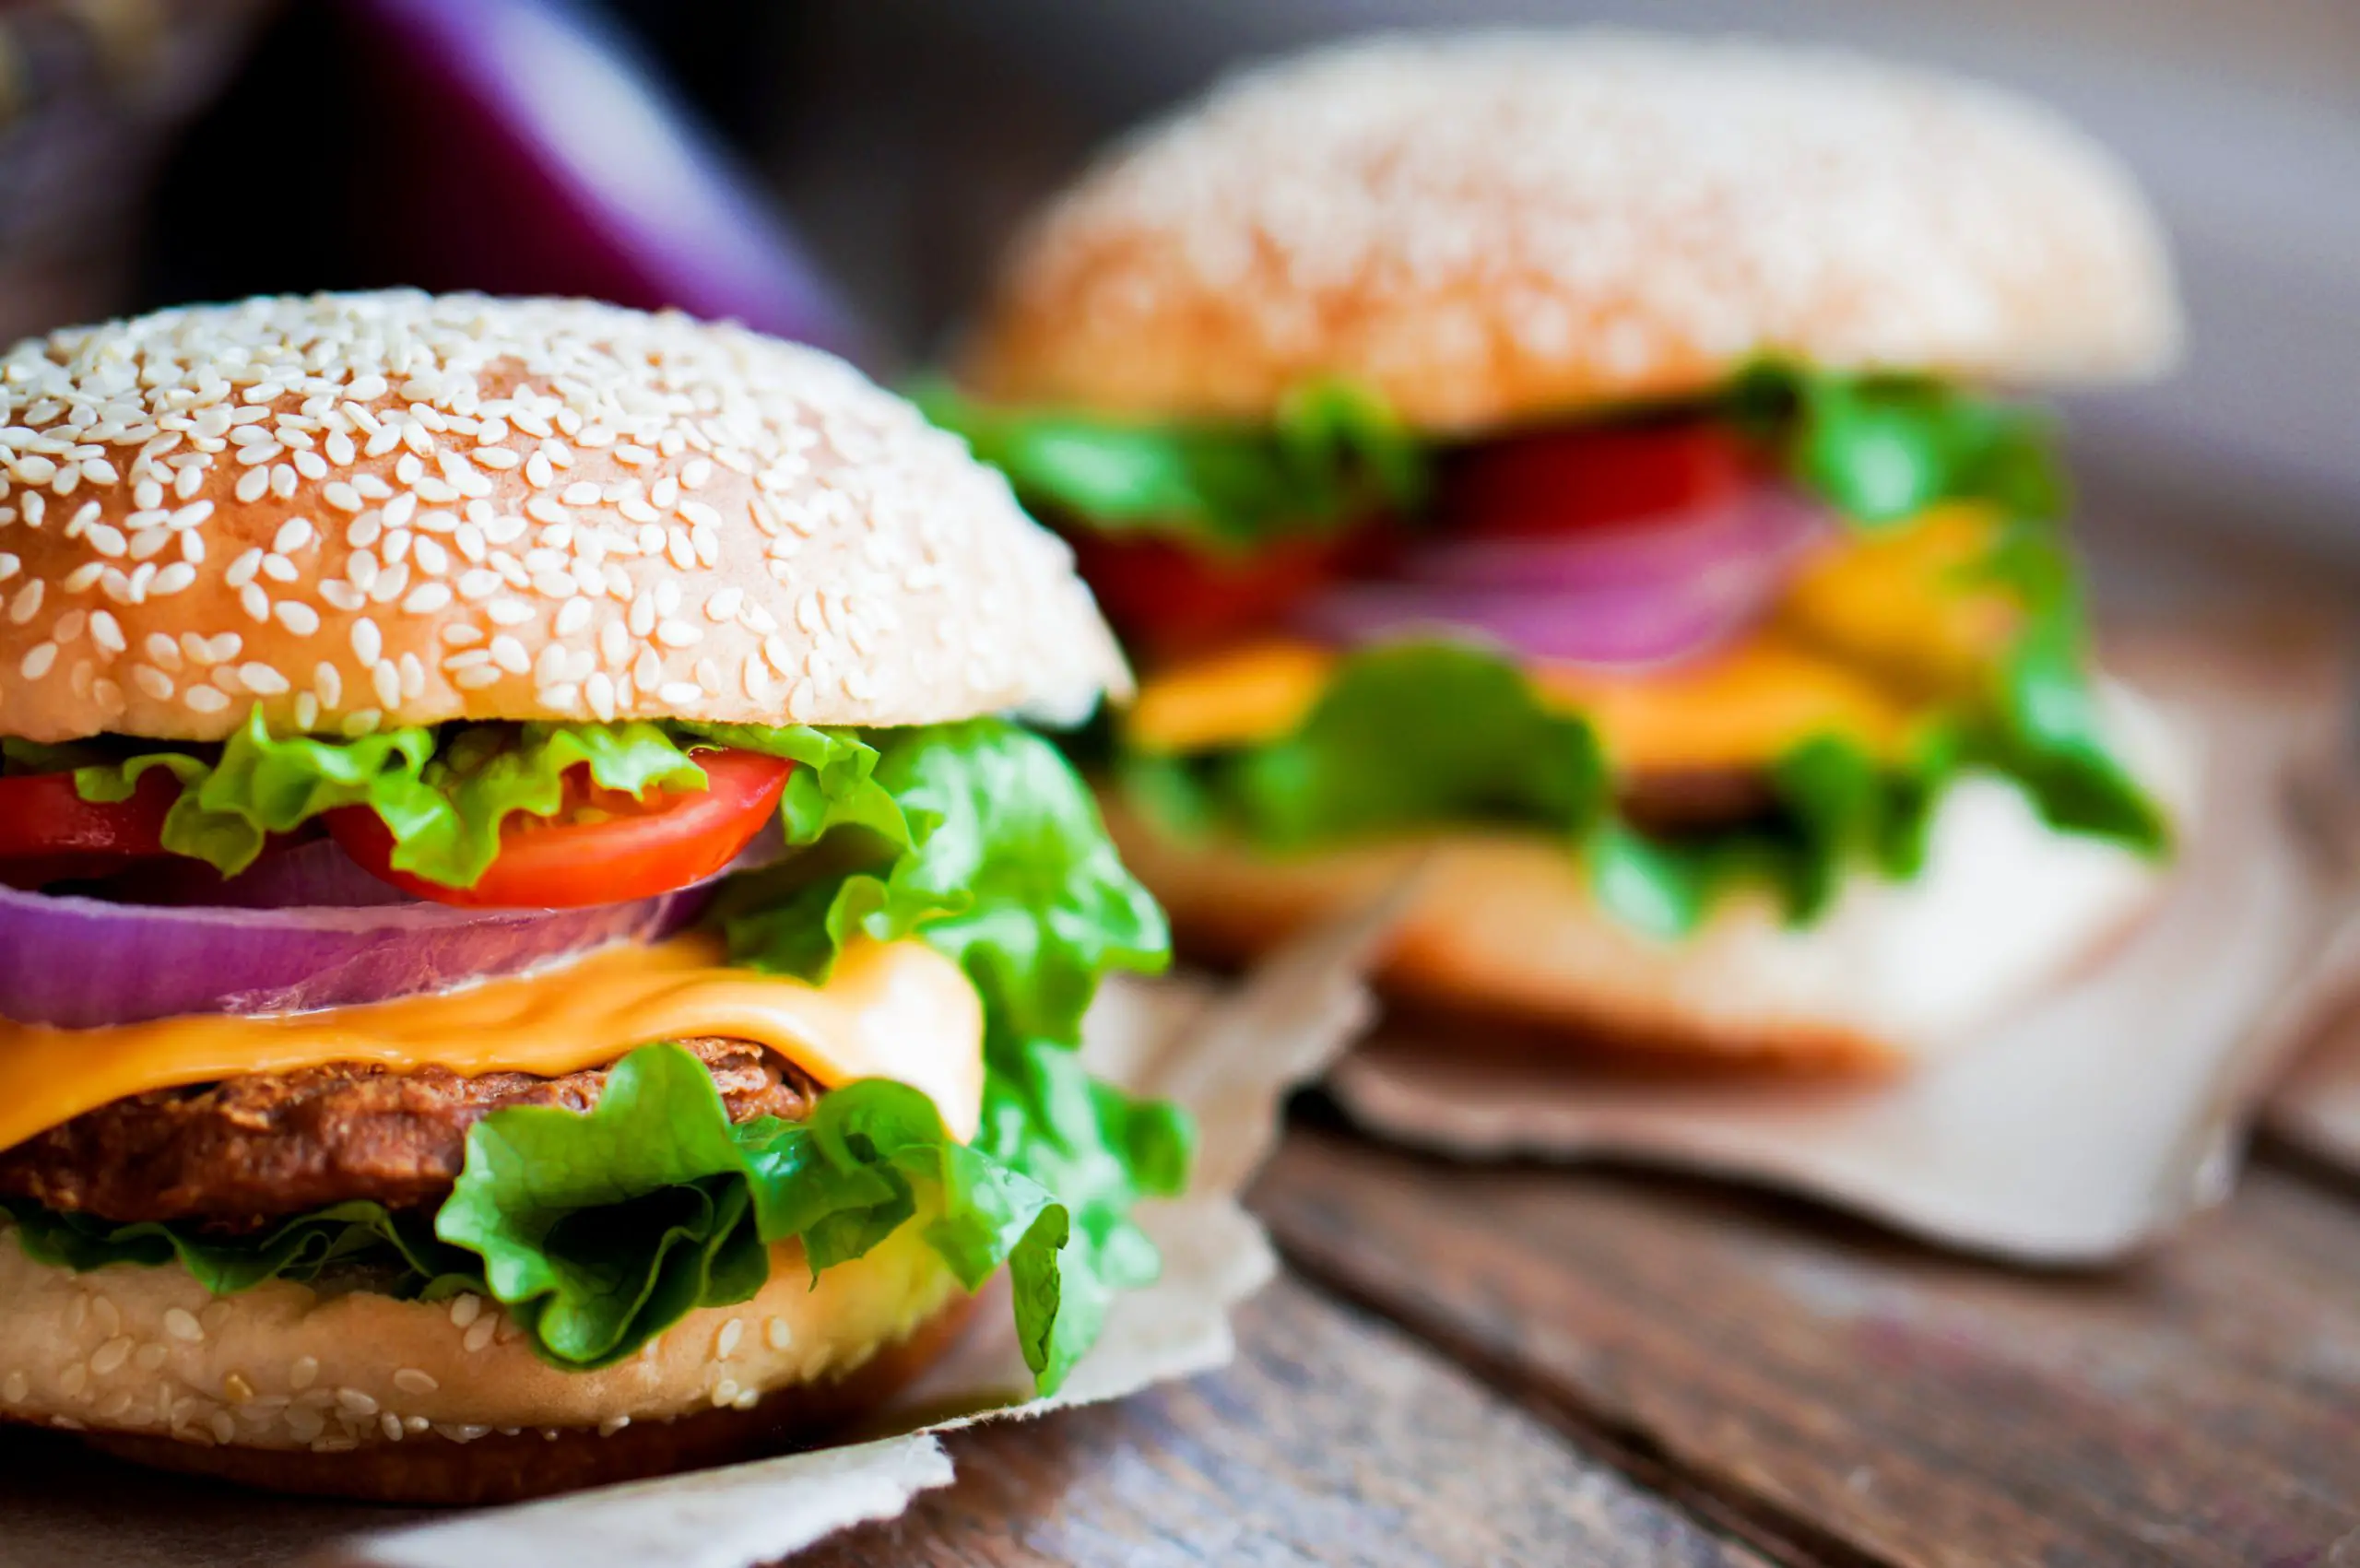 De klassieke hamburger, simpel maar lekker - BurgerBites